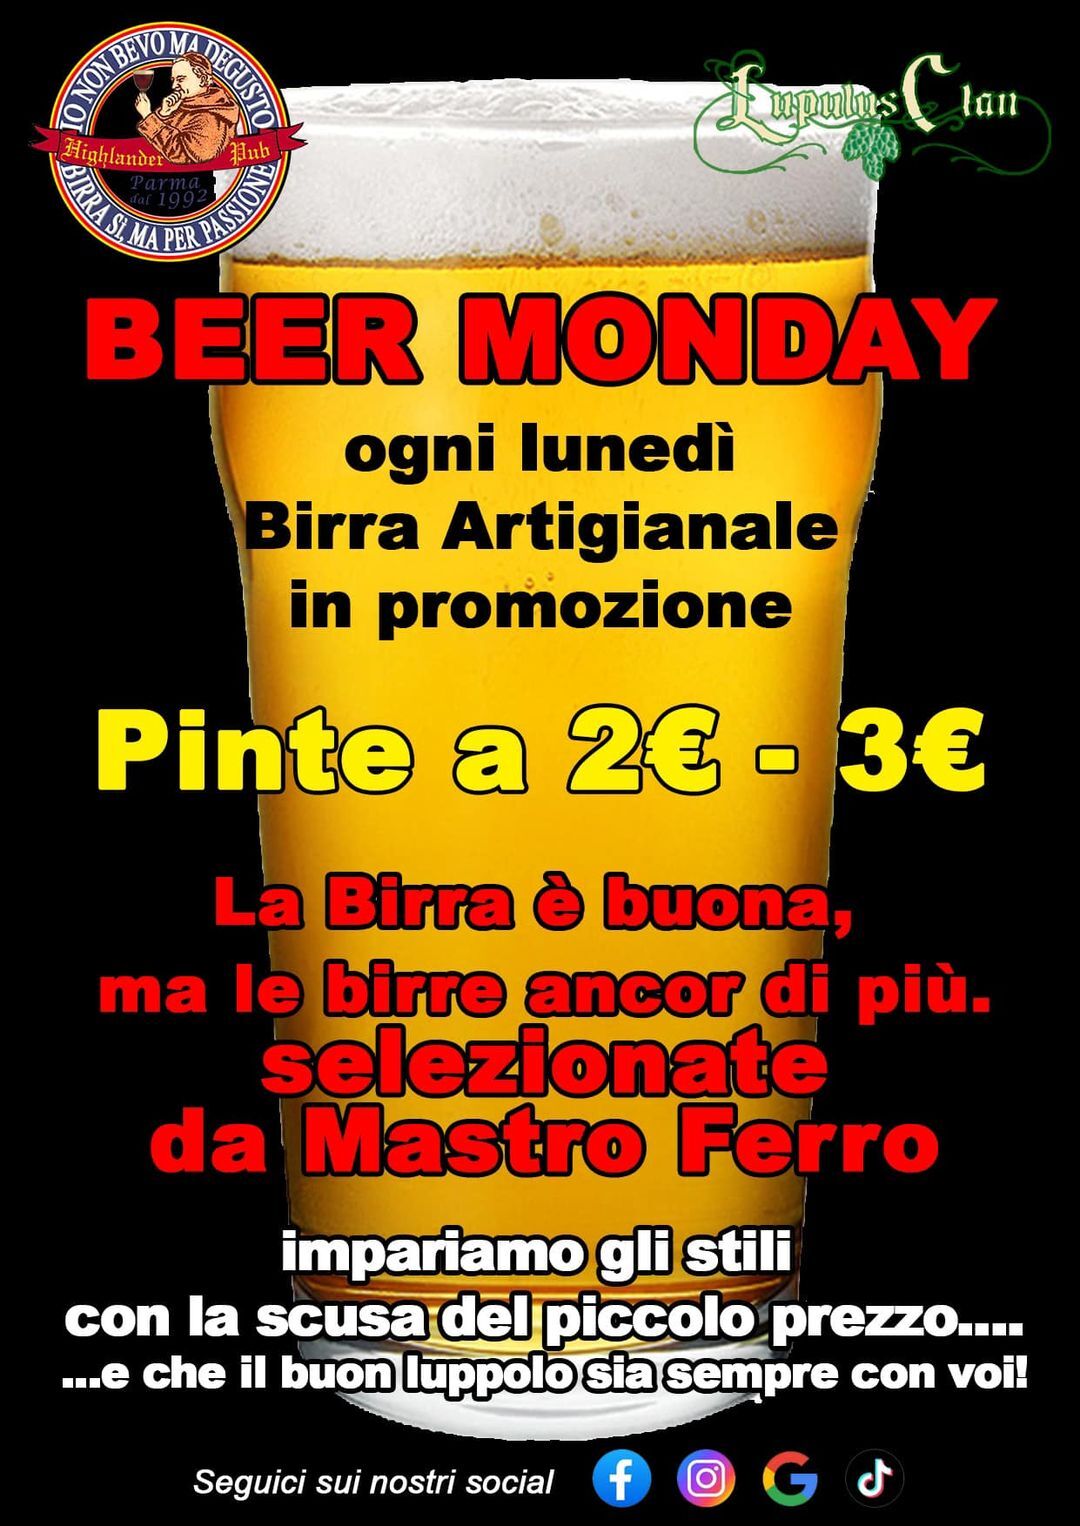 Beer monday all'Highlander Pub Beershop Di Parma,